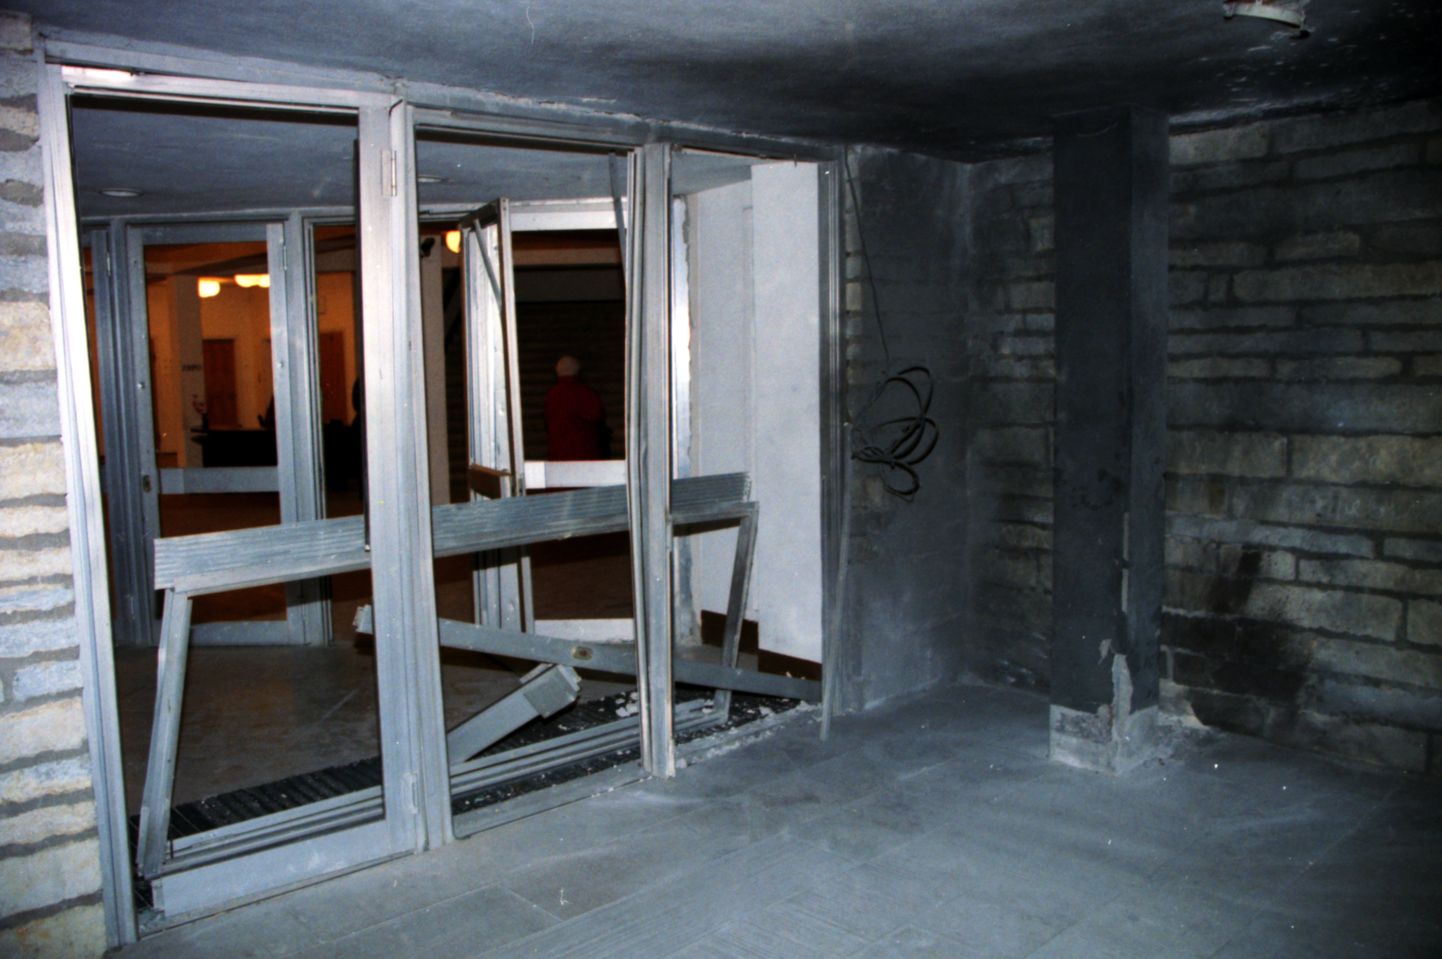 1995.a. plahvatas Tallinna Linnakohtu majas lõhkekeha